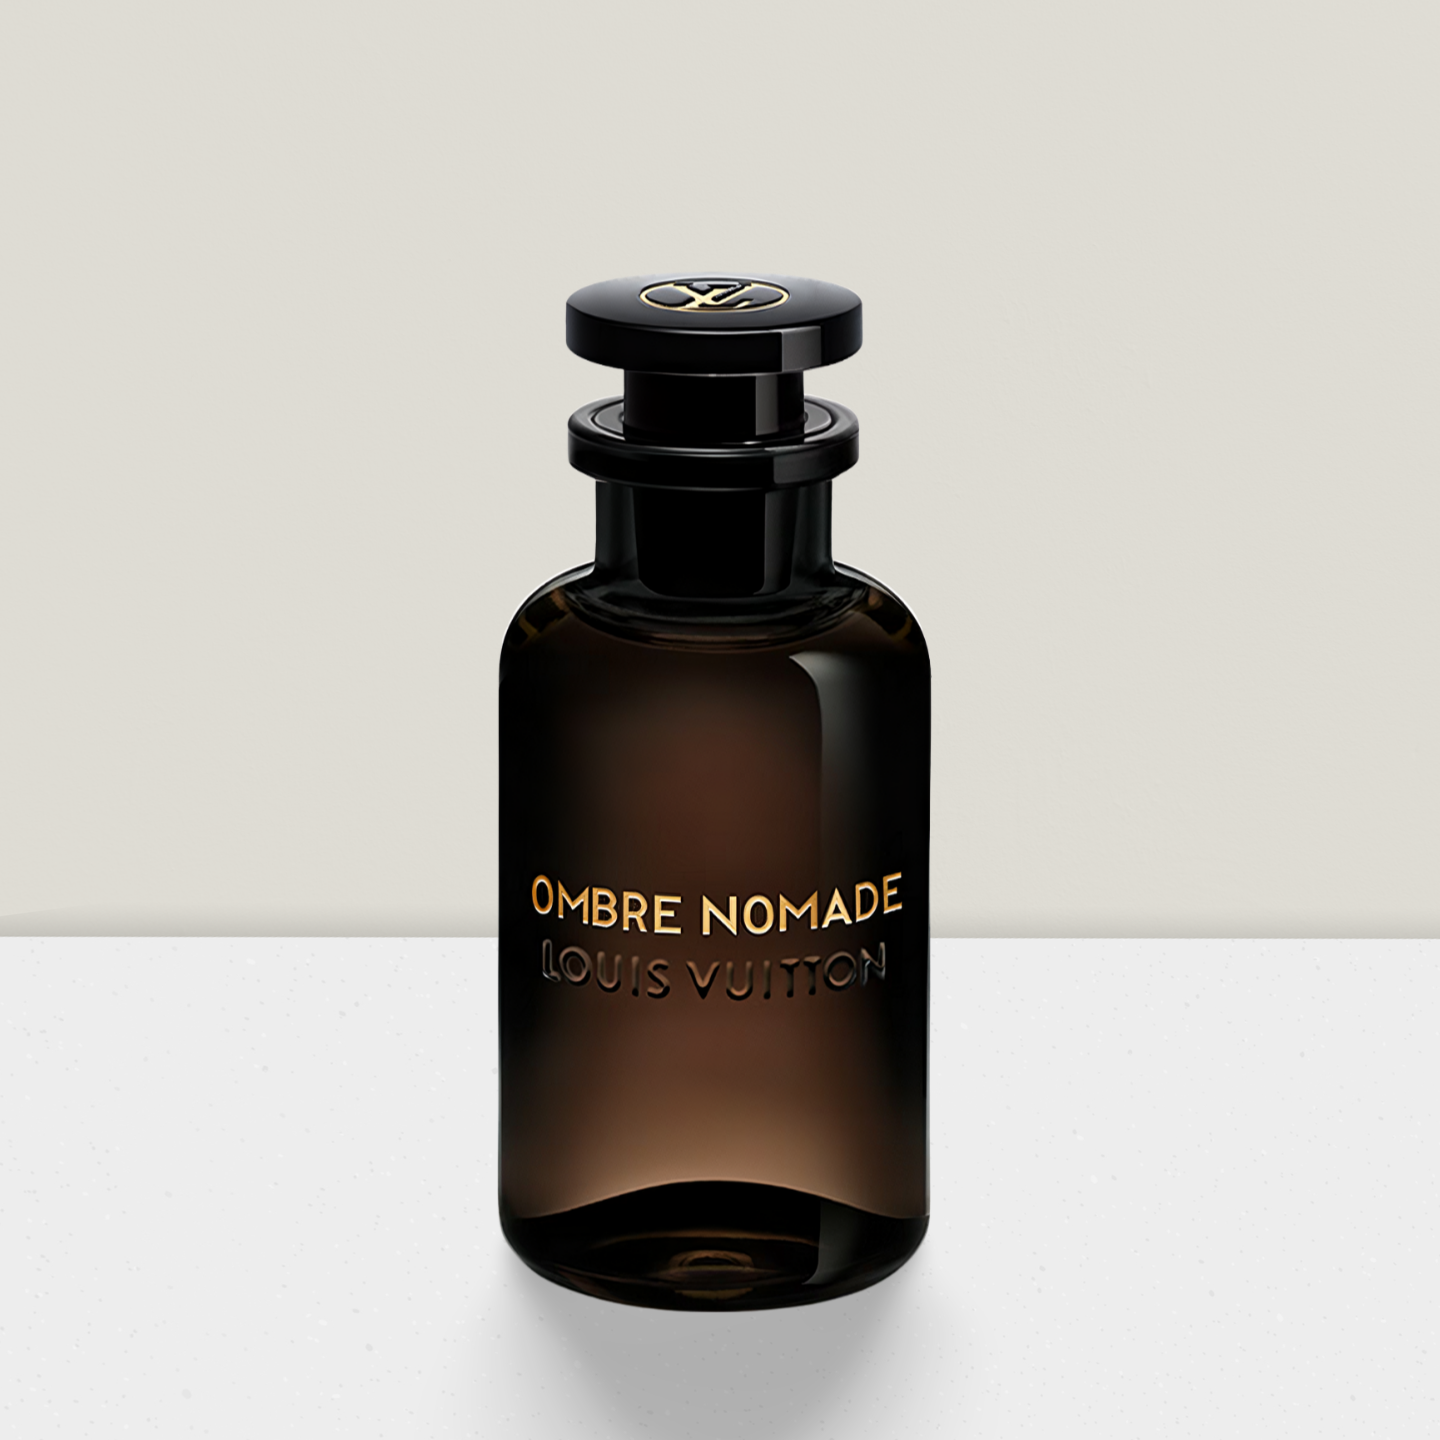 LOUIS VUITTON - Ombre Nomade Duftprobe Parfümprobe Abfüllung